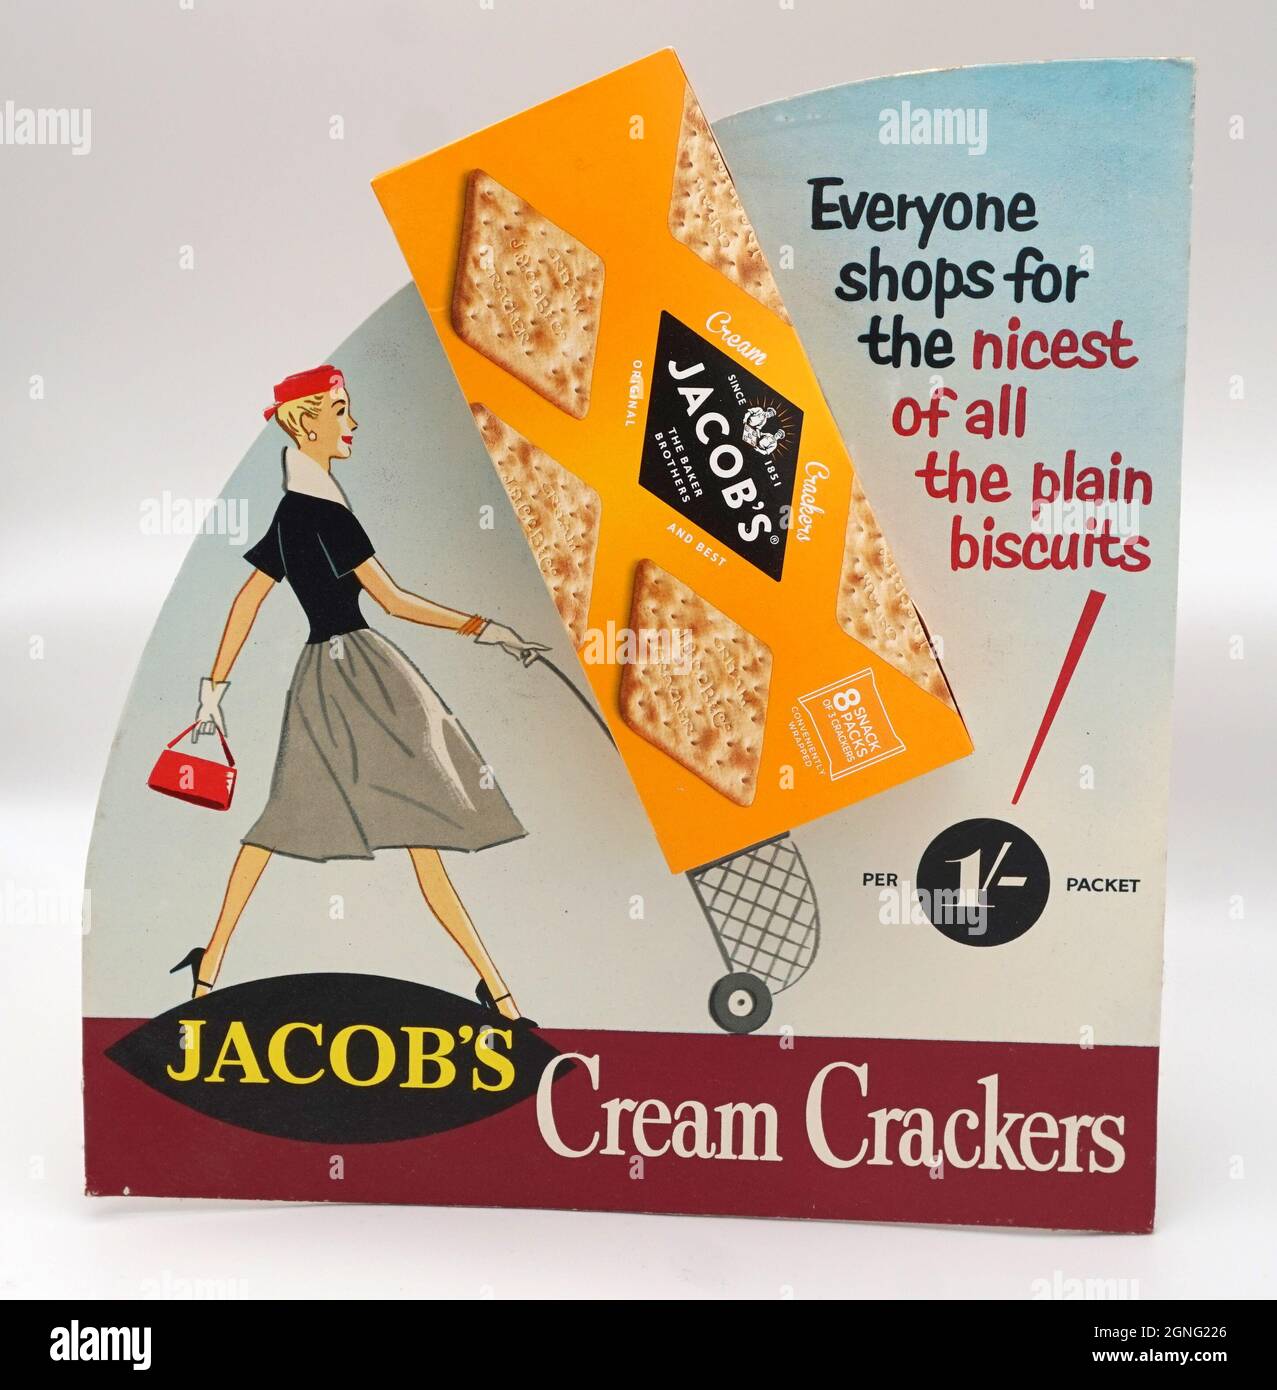 Jacob's Cream Crackers, questo stand vintage mostra pubblicitaria risale al 1950s. Prezzo per pacchetto 1/- (5p). Favolosa illustrazione di una donna moderna in stile anni '50 che spinge un carrello per lo shopping. "Tutti i negozi per il più bello di tutti i biscotti semplici". Foto Stock